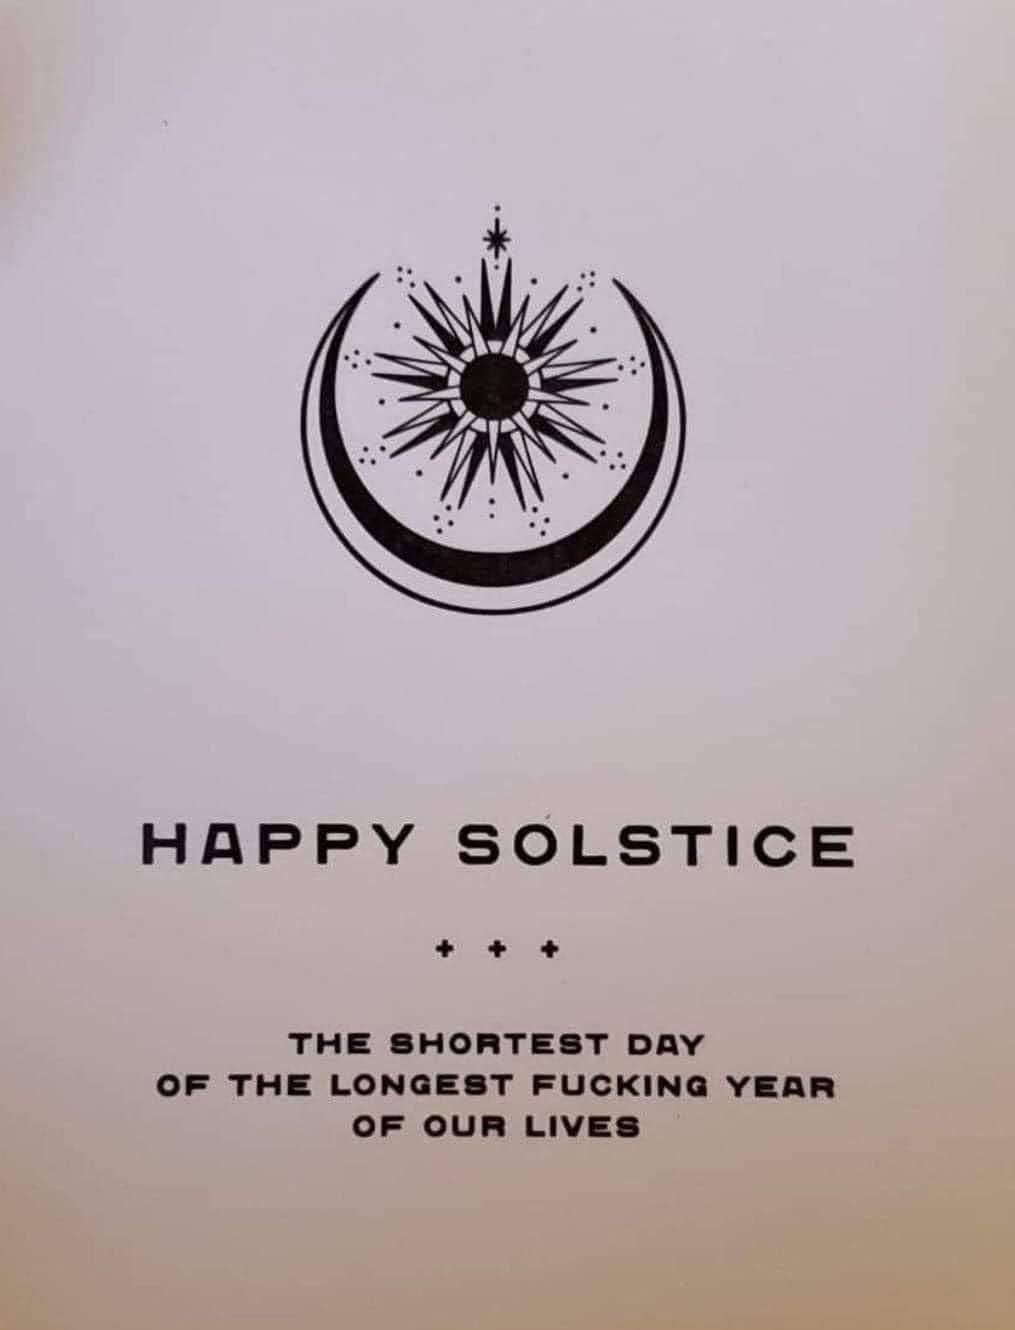 Happy Solstice, again...